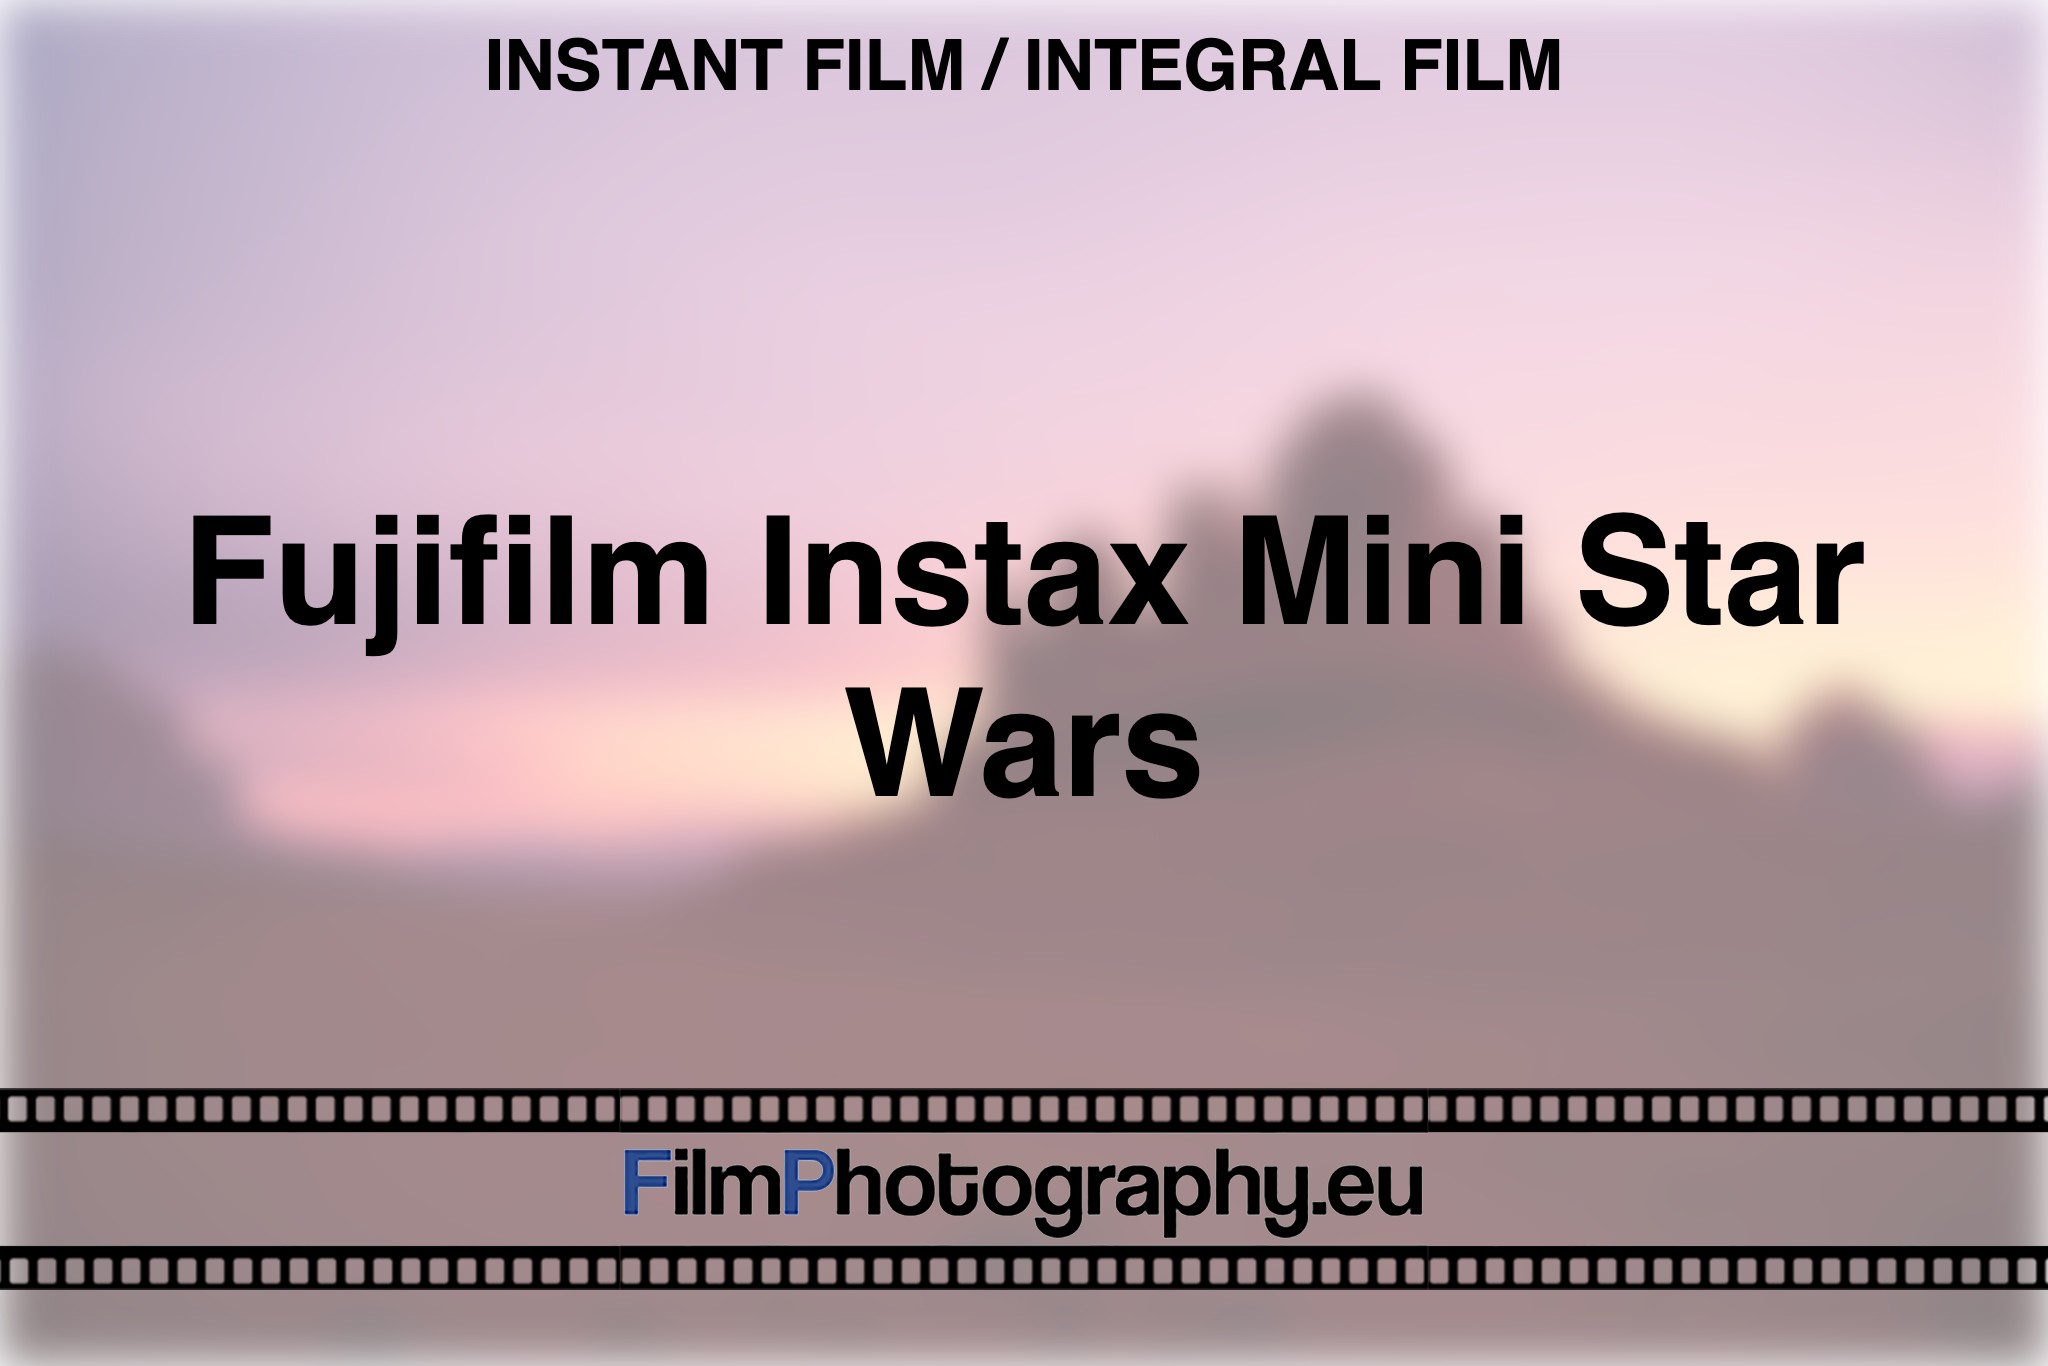 fujifilm-instax-mini-star-wars-instant-film-integral-film-bnv